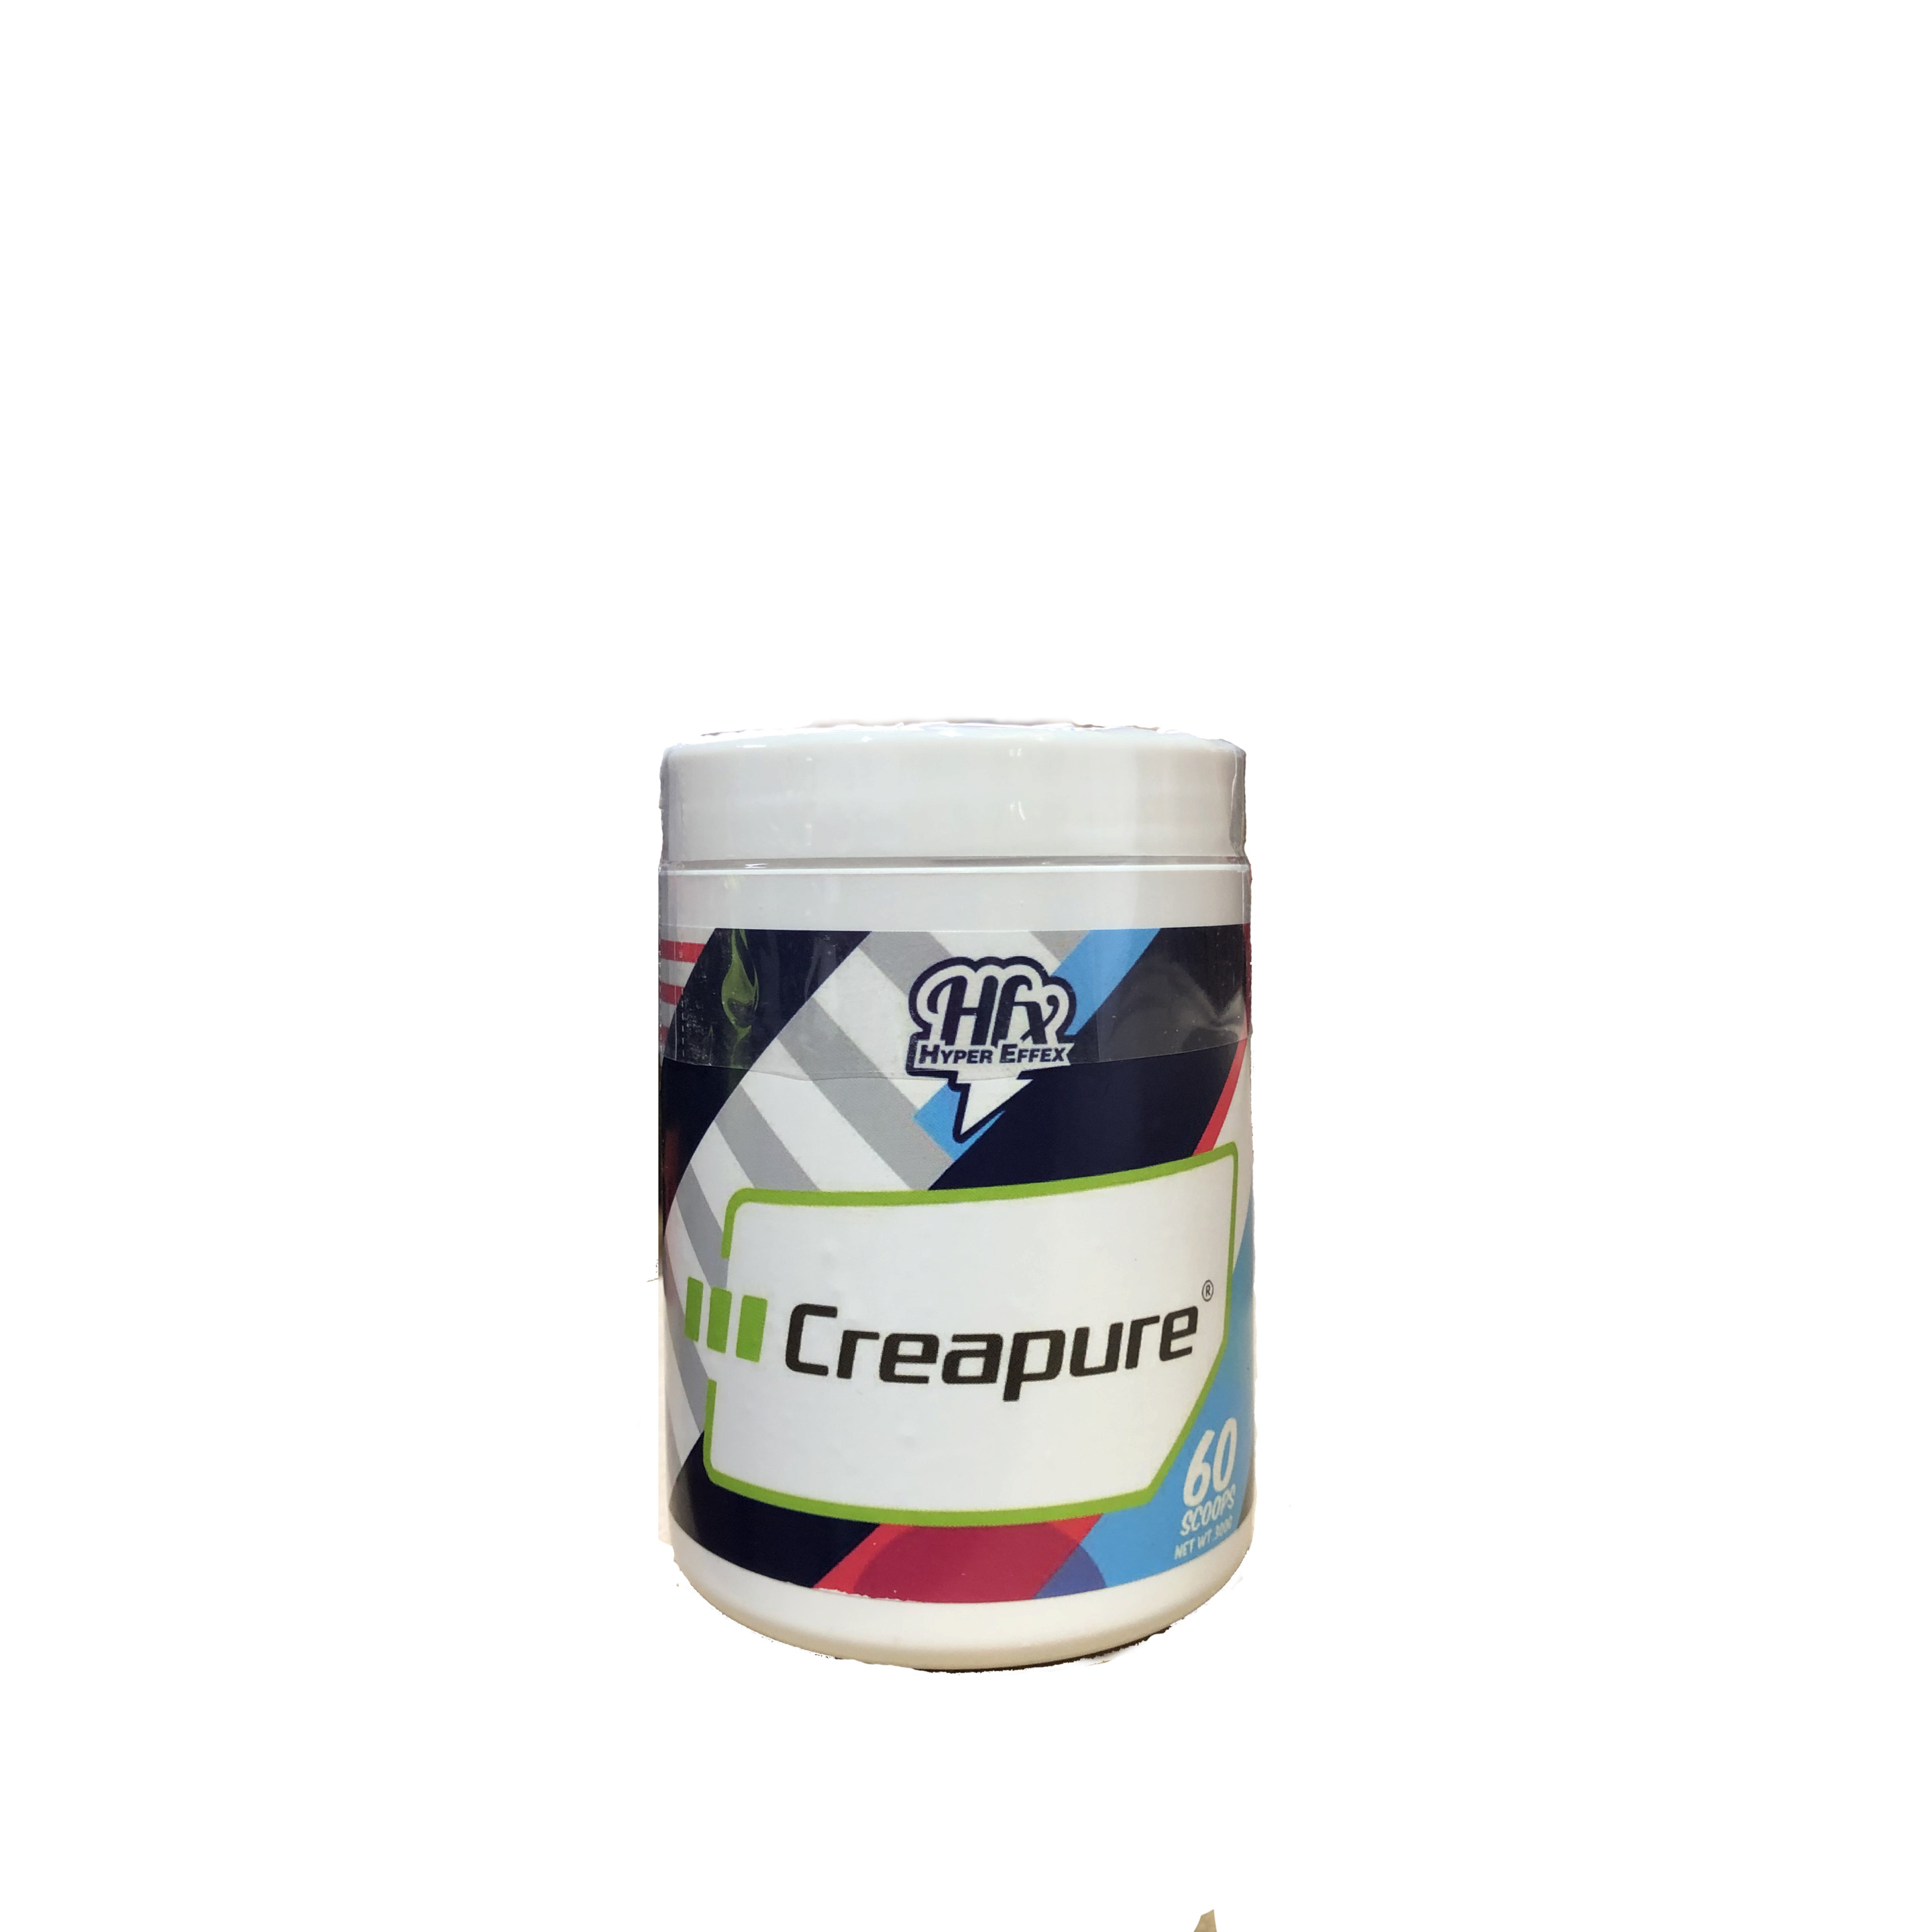 Pure De Creatina 300gr - Creapure De Hypper Effex  MKP